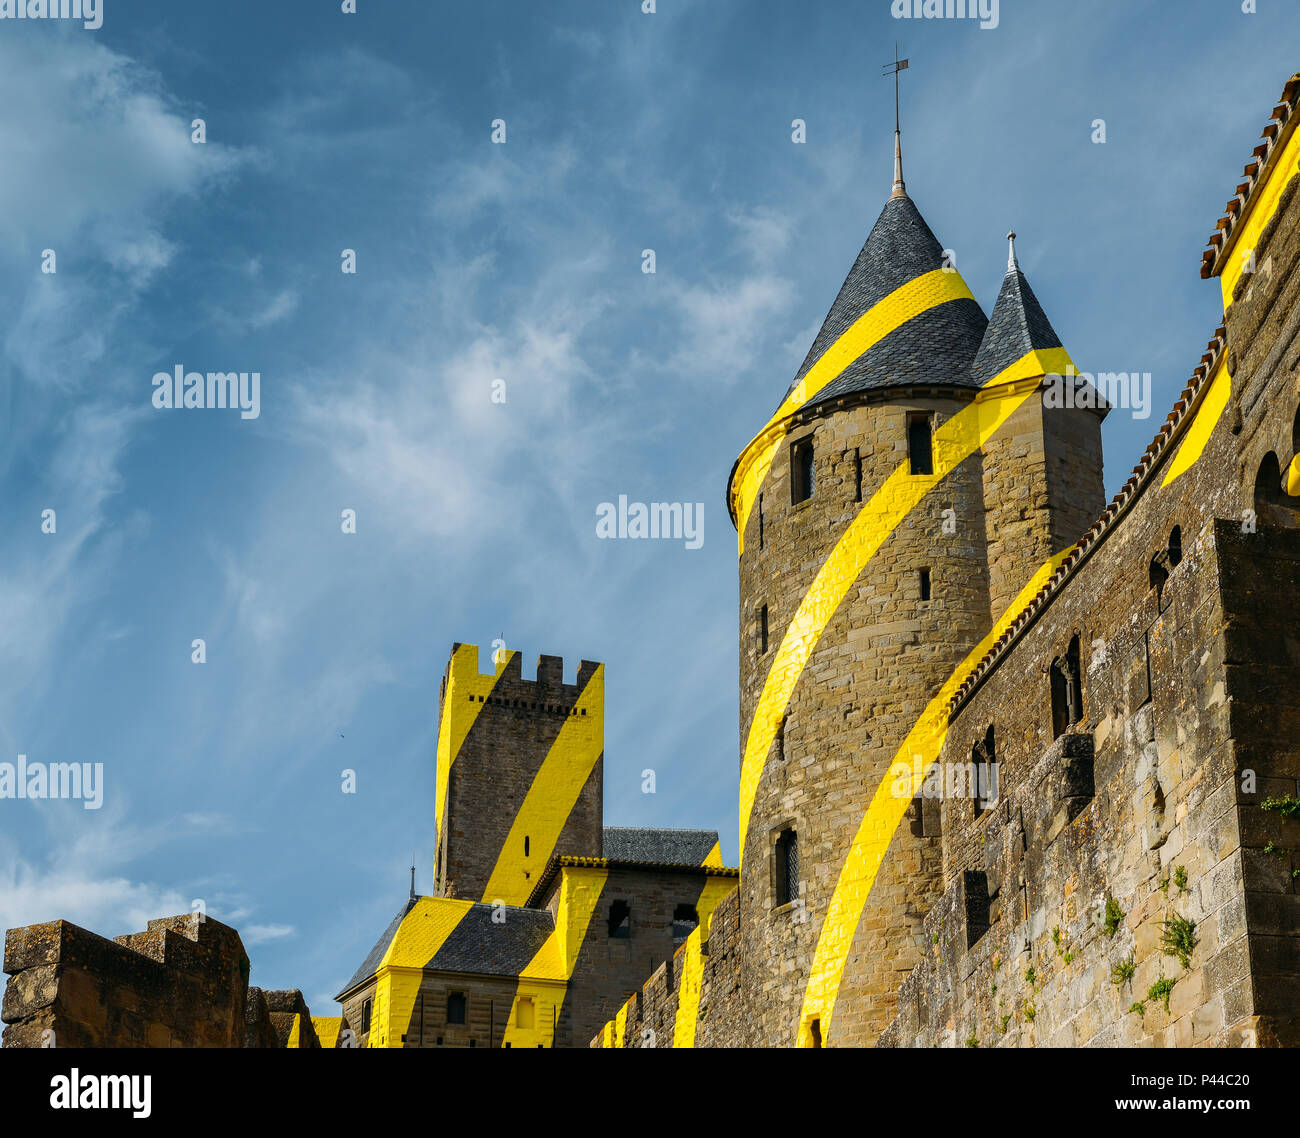 Carcassonne, une ville dans le sud de la France, est un site du patrimoine mondial de l'UNESCO célèbre pour sa citadelle médiévale Banque D'Images